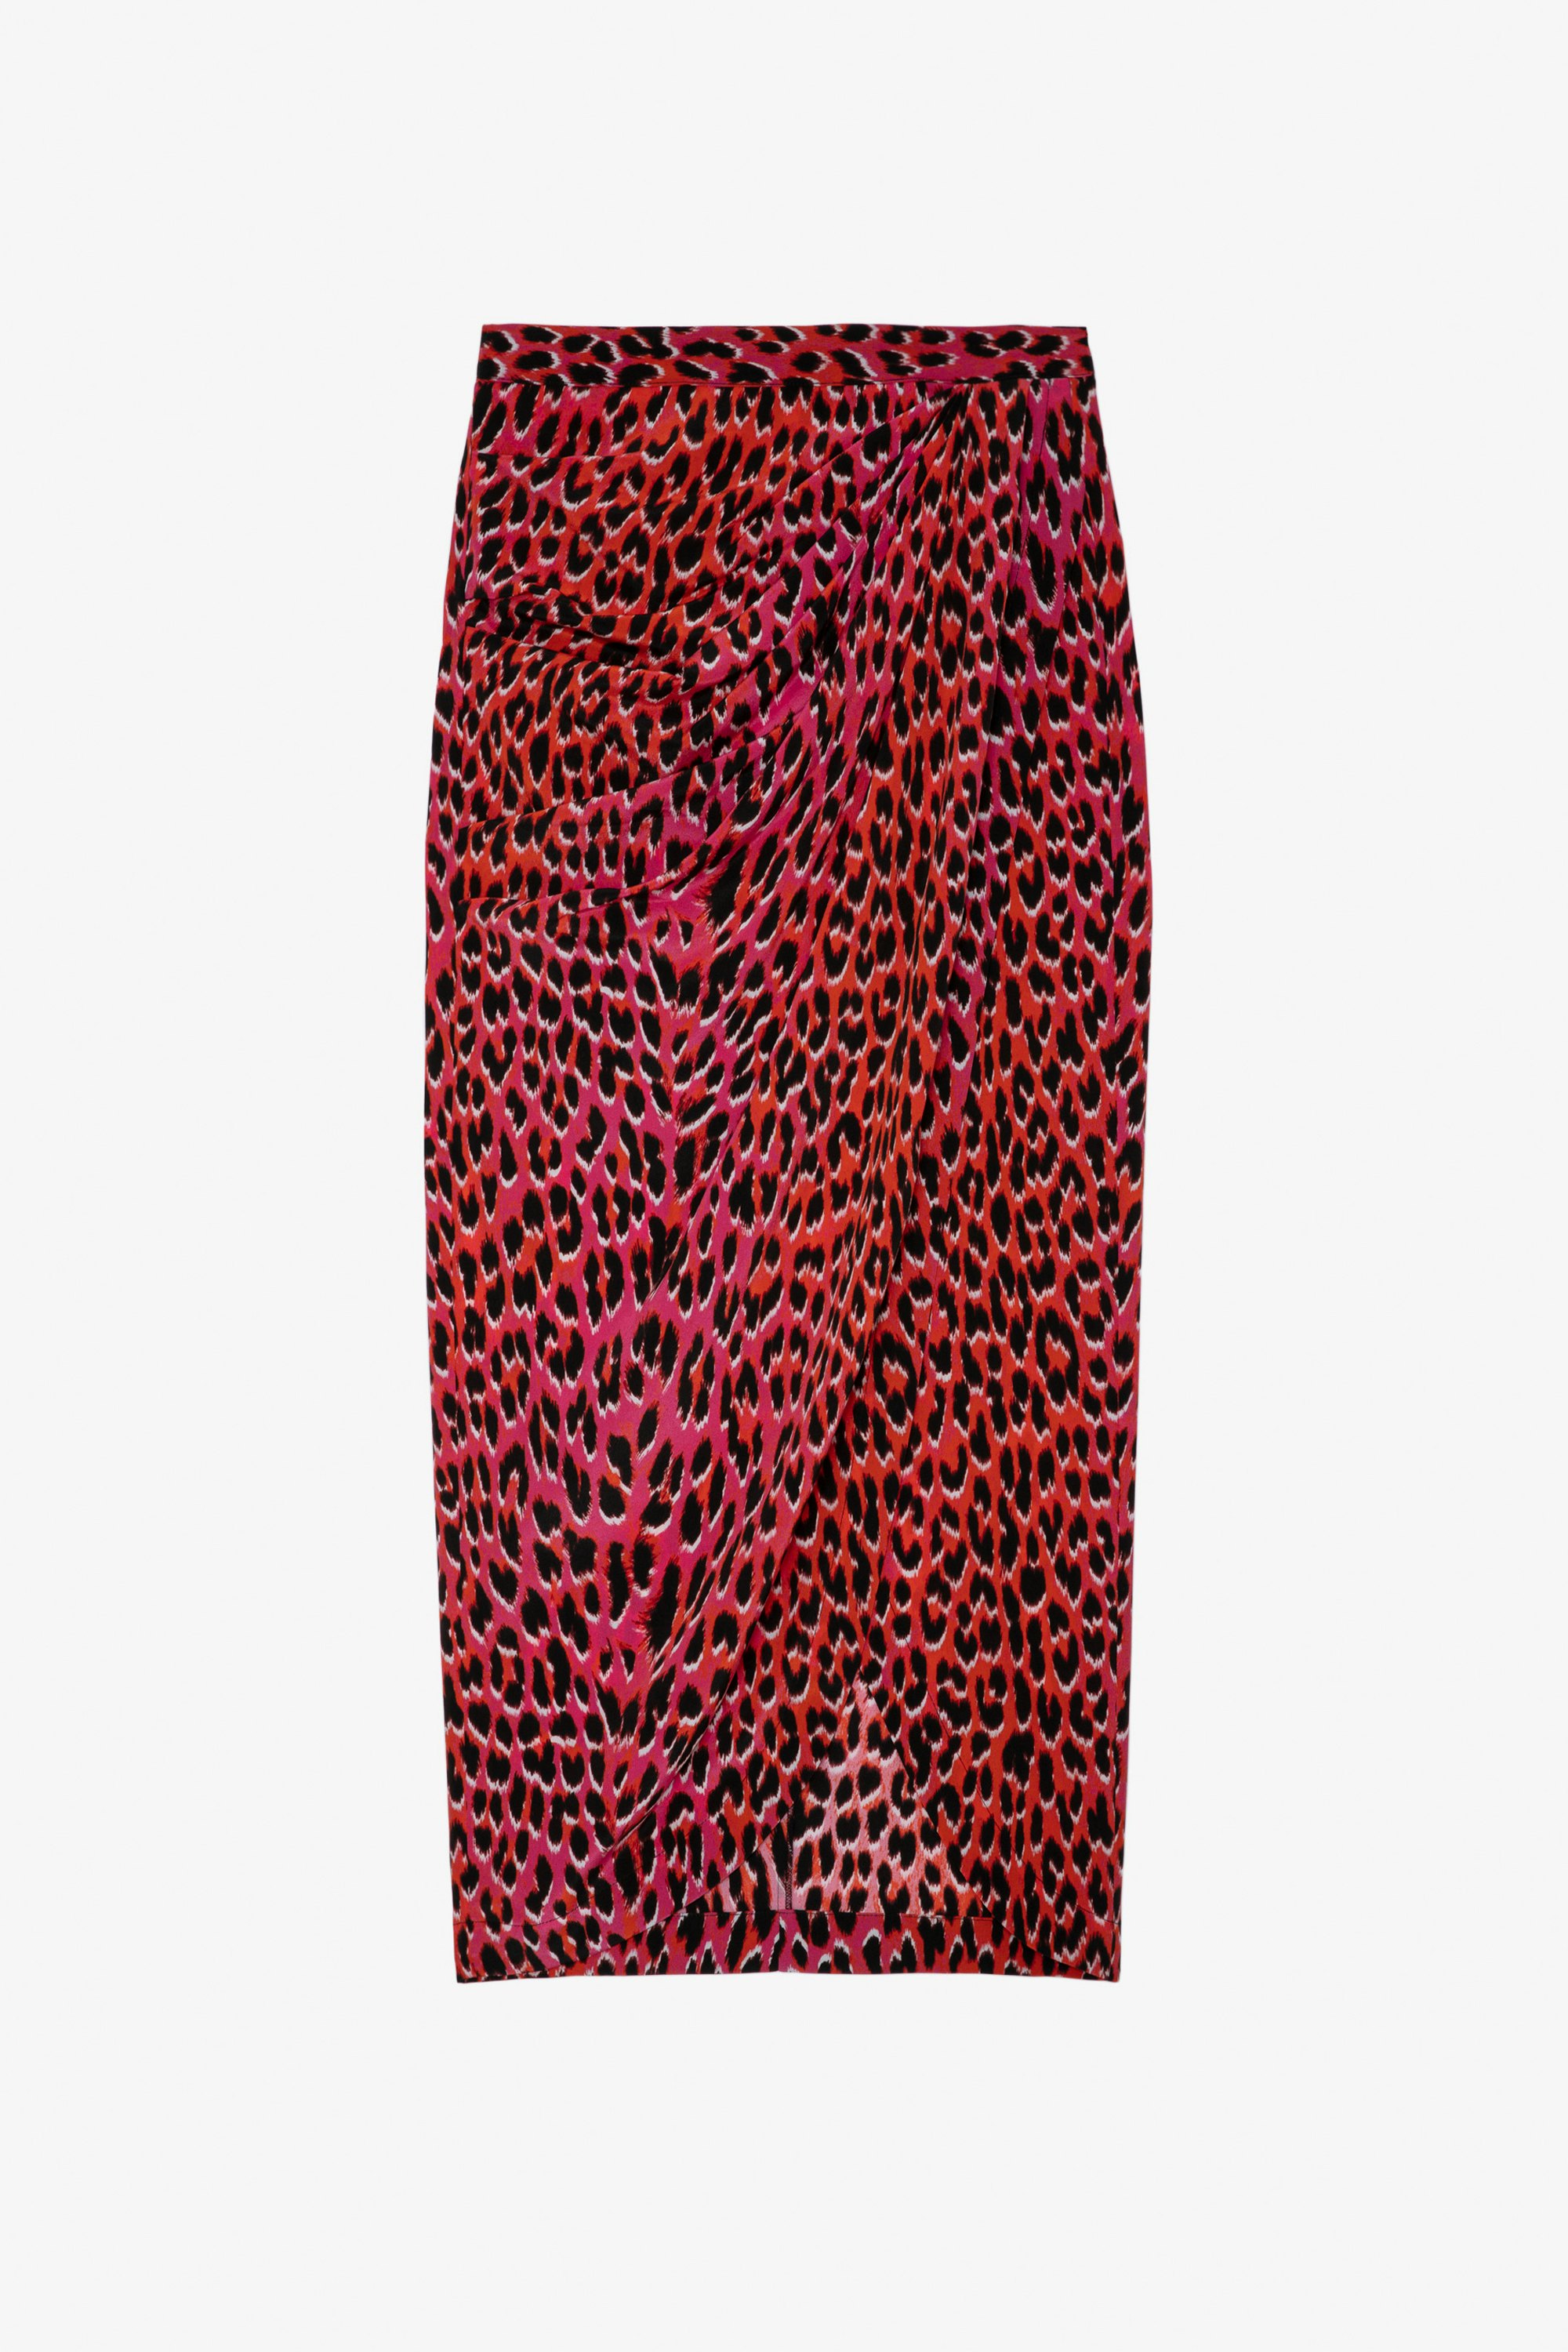 Gonna Jamelia Leopardata Seta - Gonna lunga drappeggiata da donna in seta rosa con motivo leopardato.